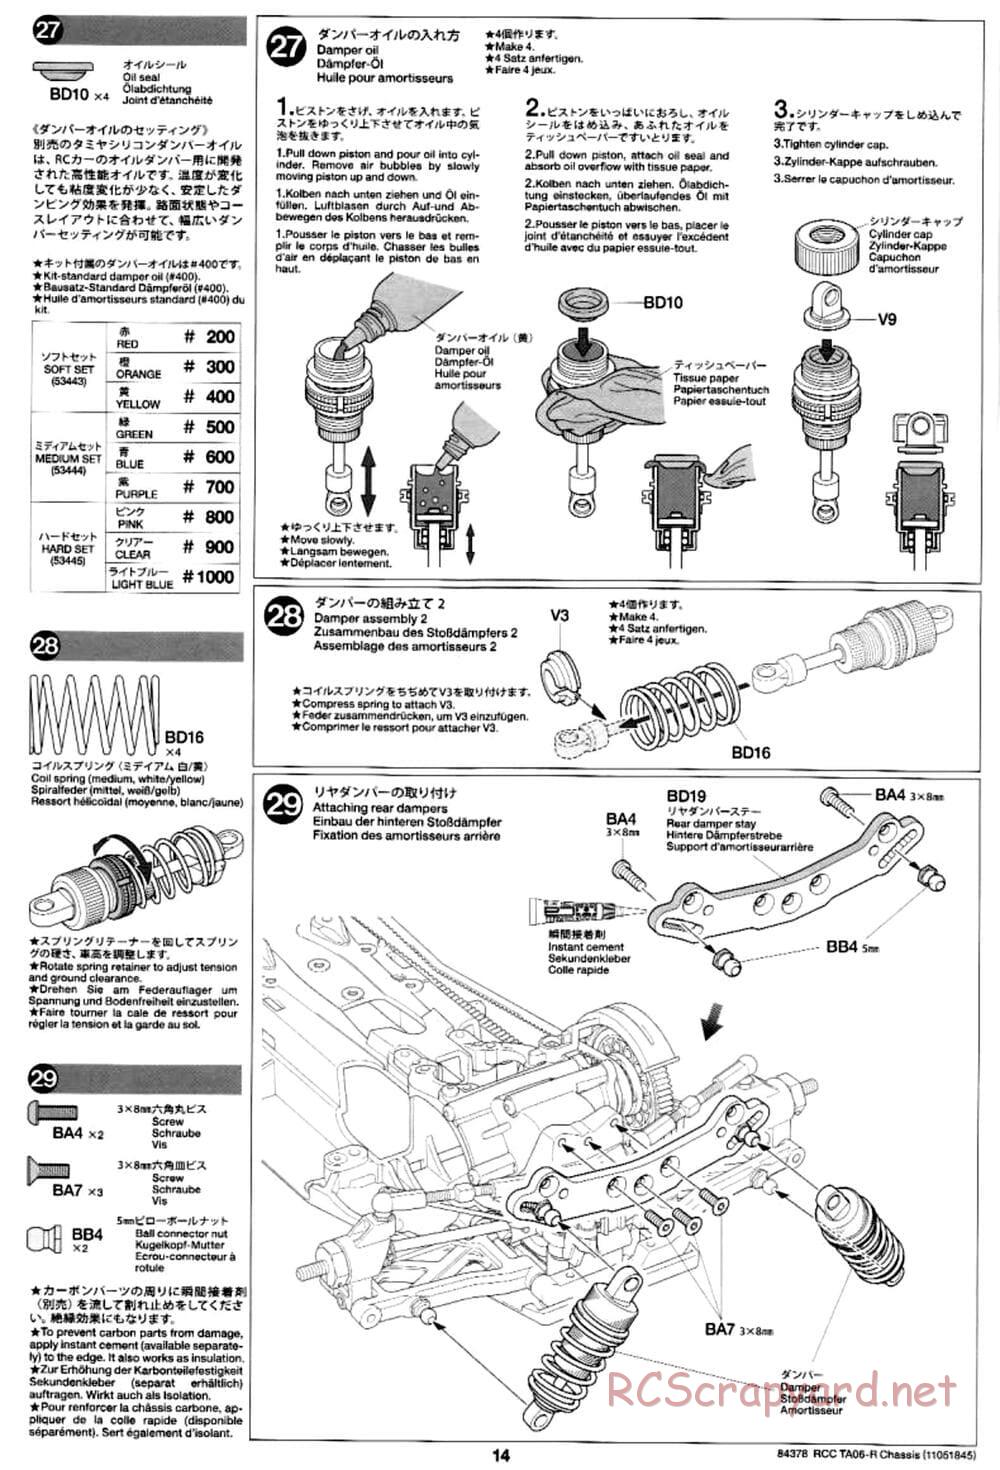 Tamiya - TA06-R Chassis - Manual - Page 14